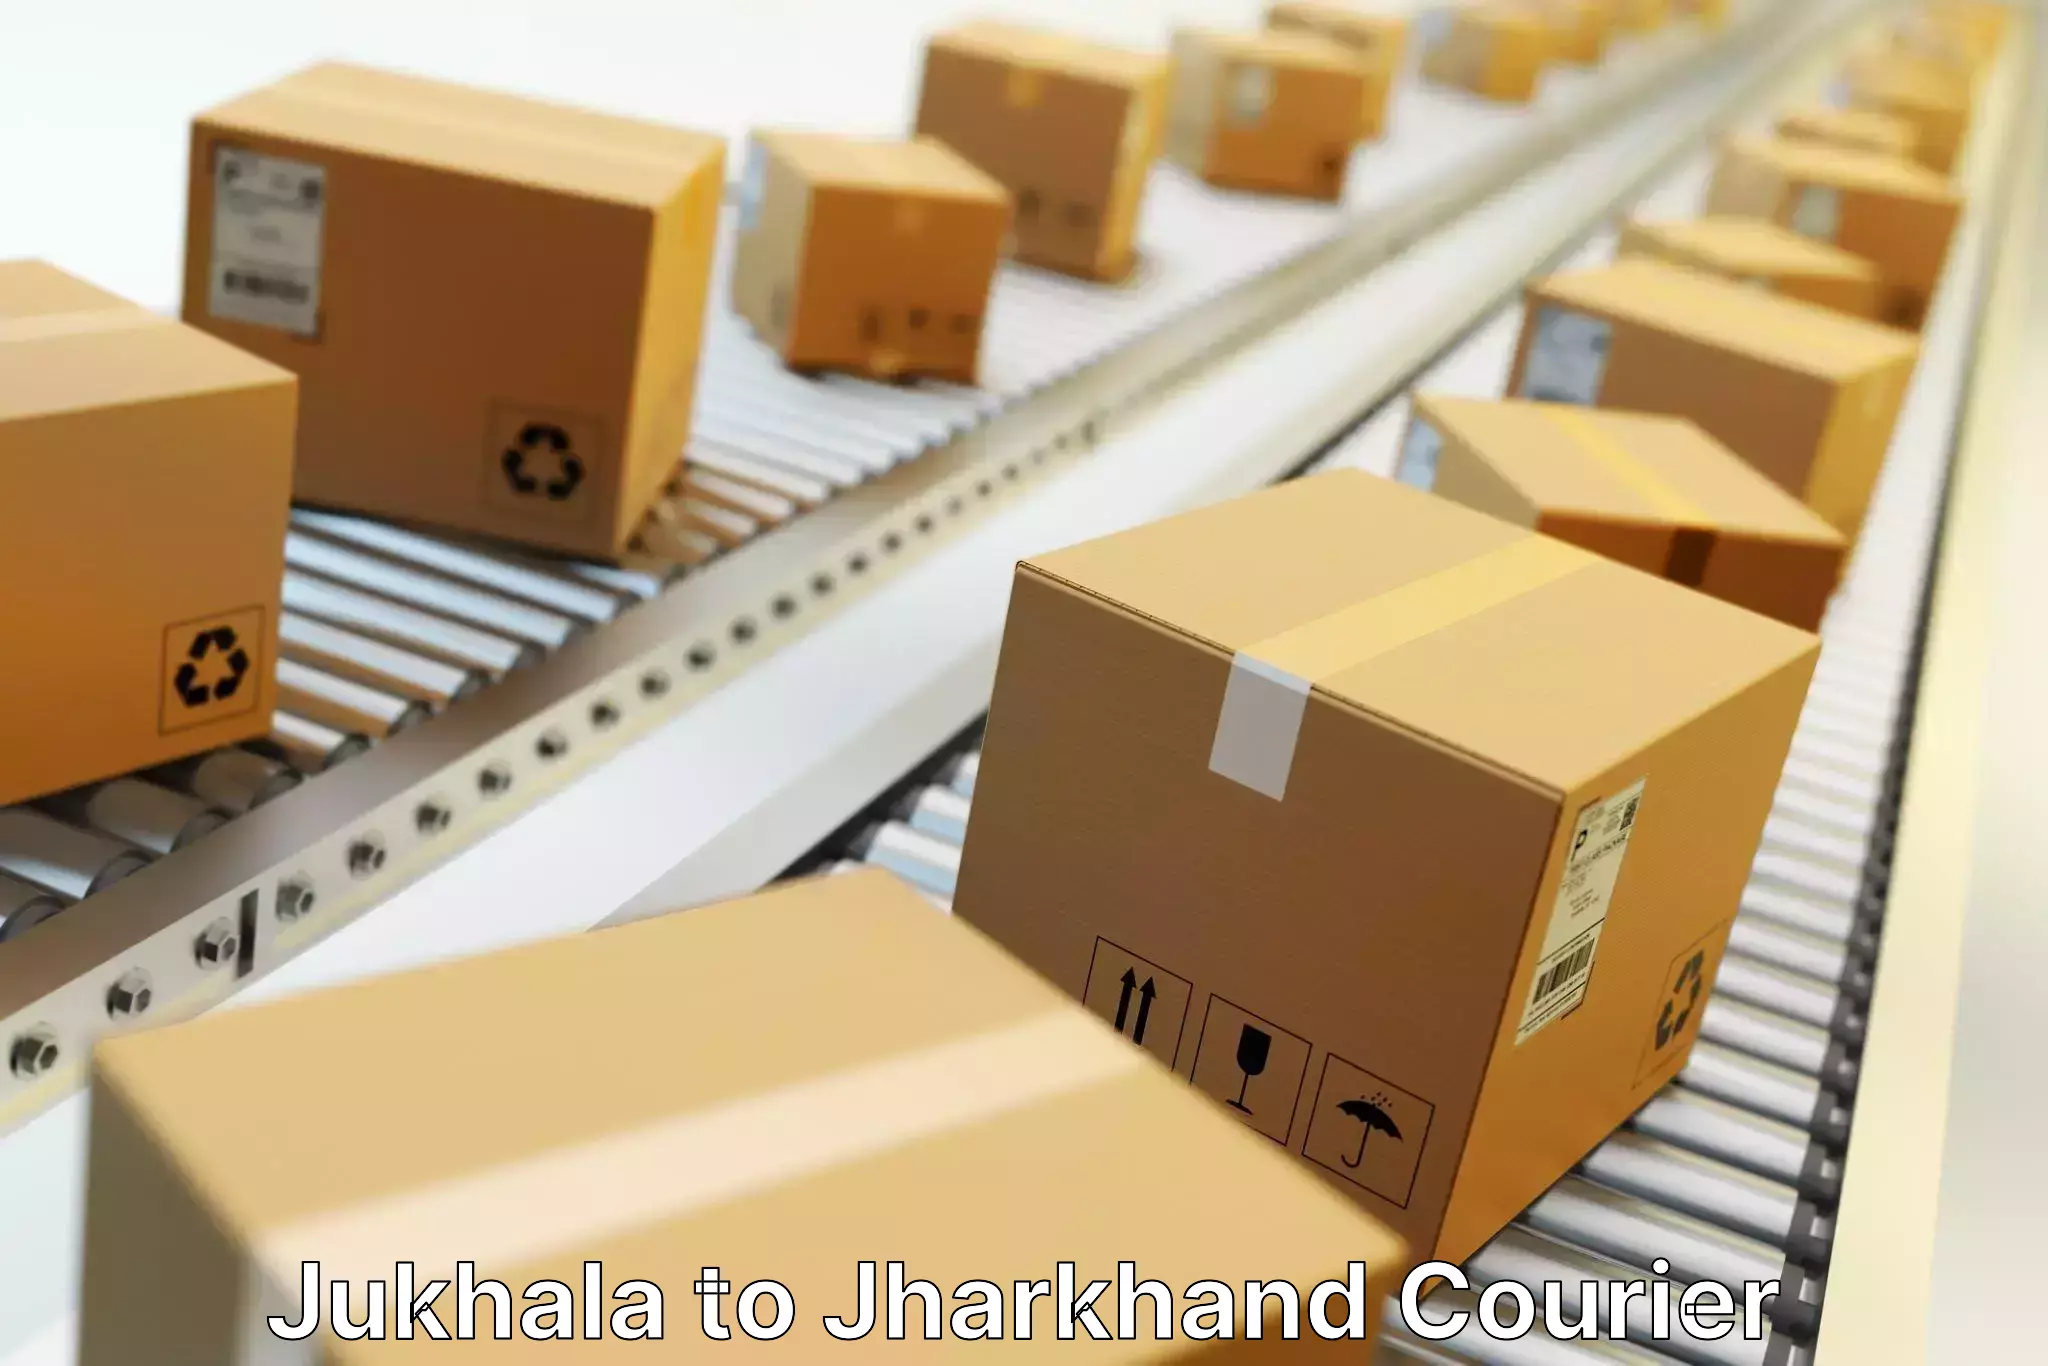 Reliable logistics providers Jukhala to Chakuliya